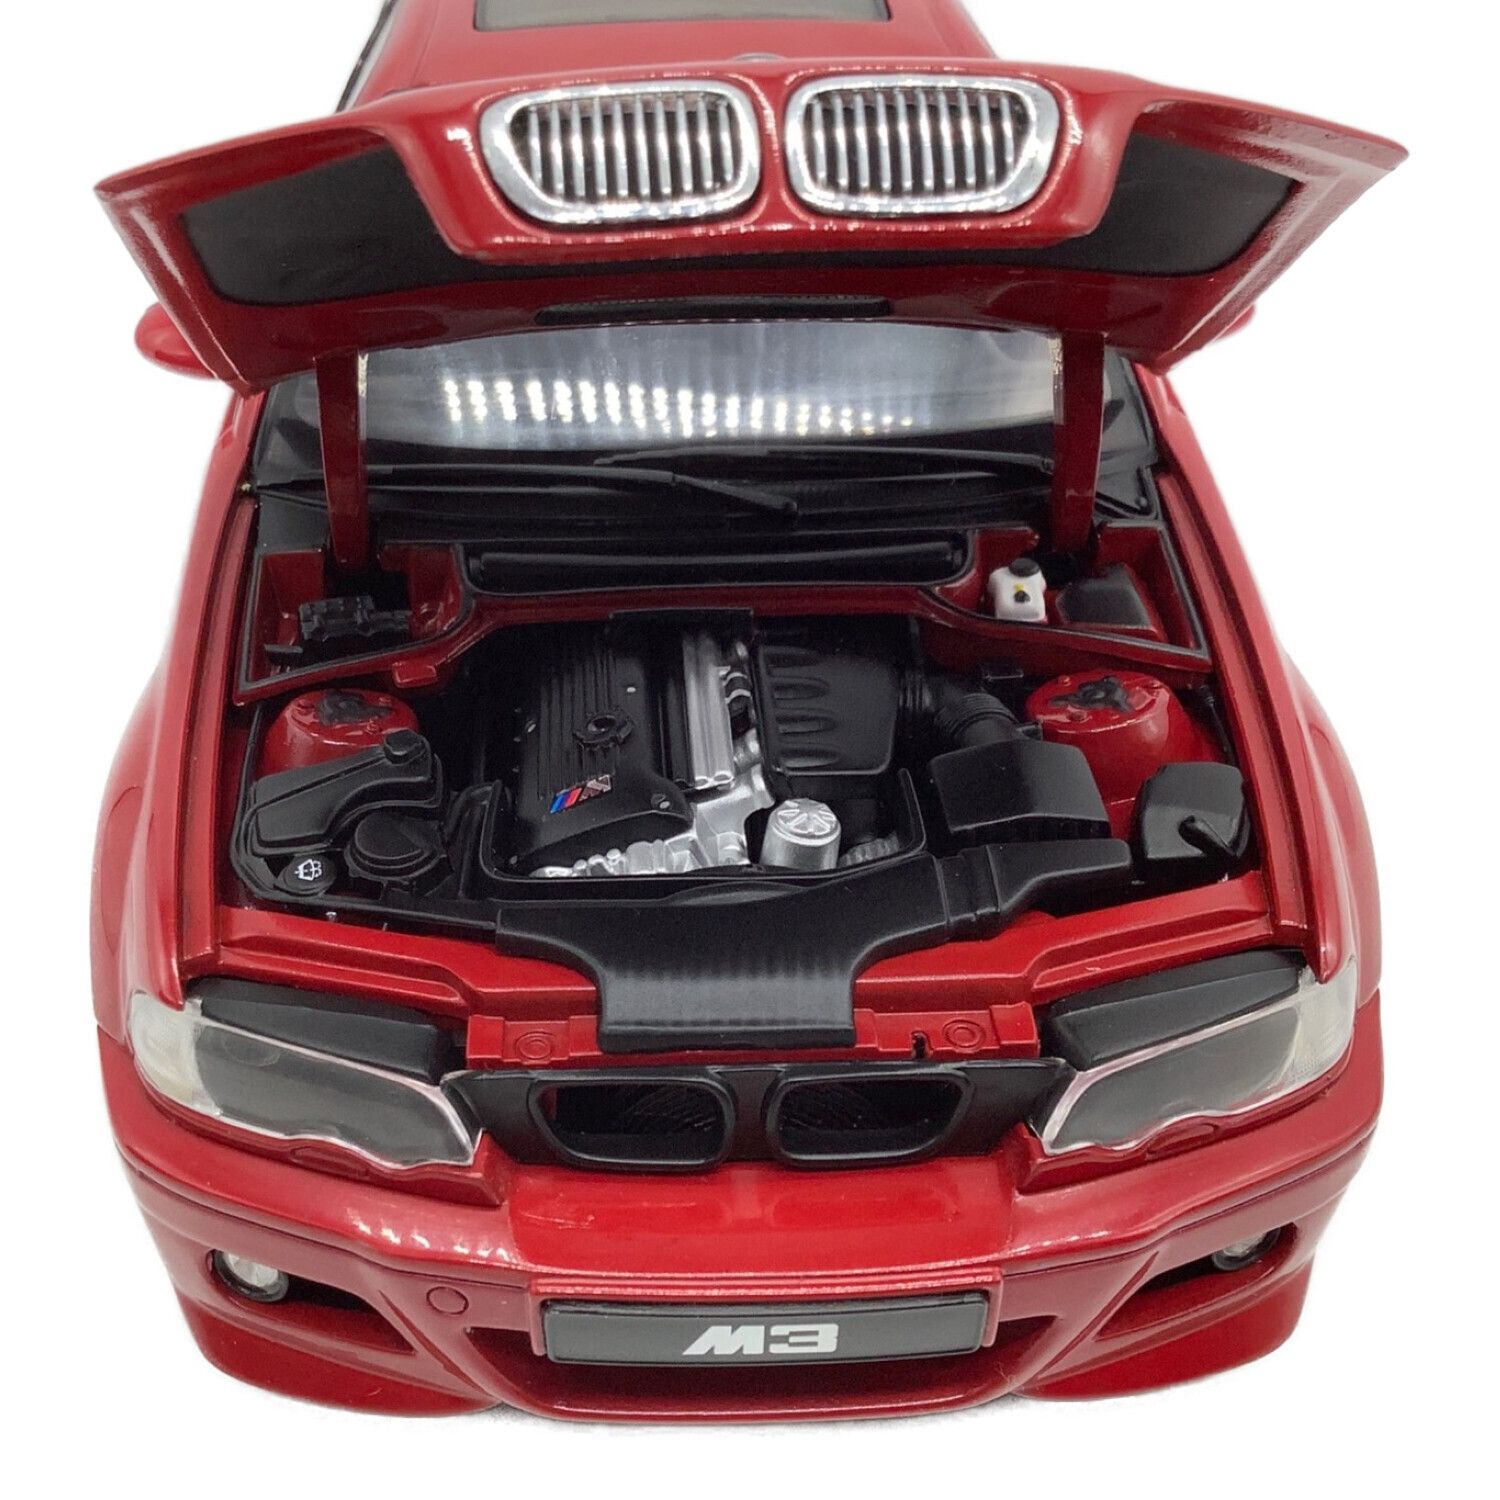 AUTOart (オートアート) モデルカー 1/18スケール BMW E46 M3